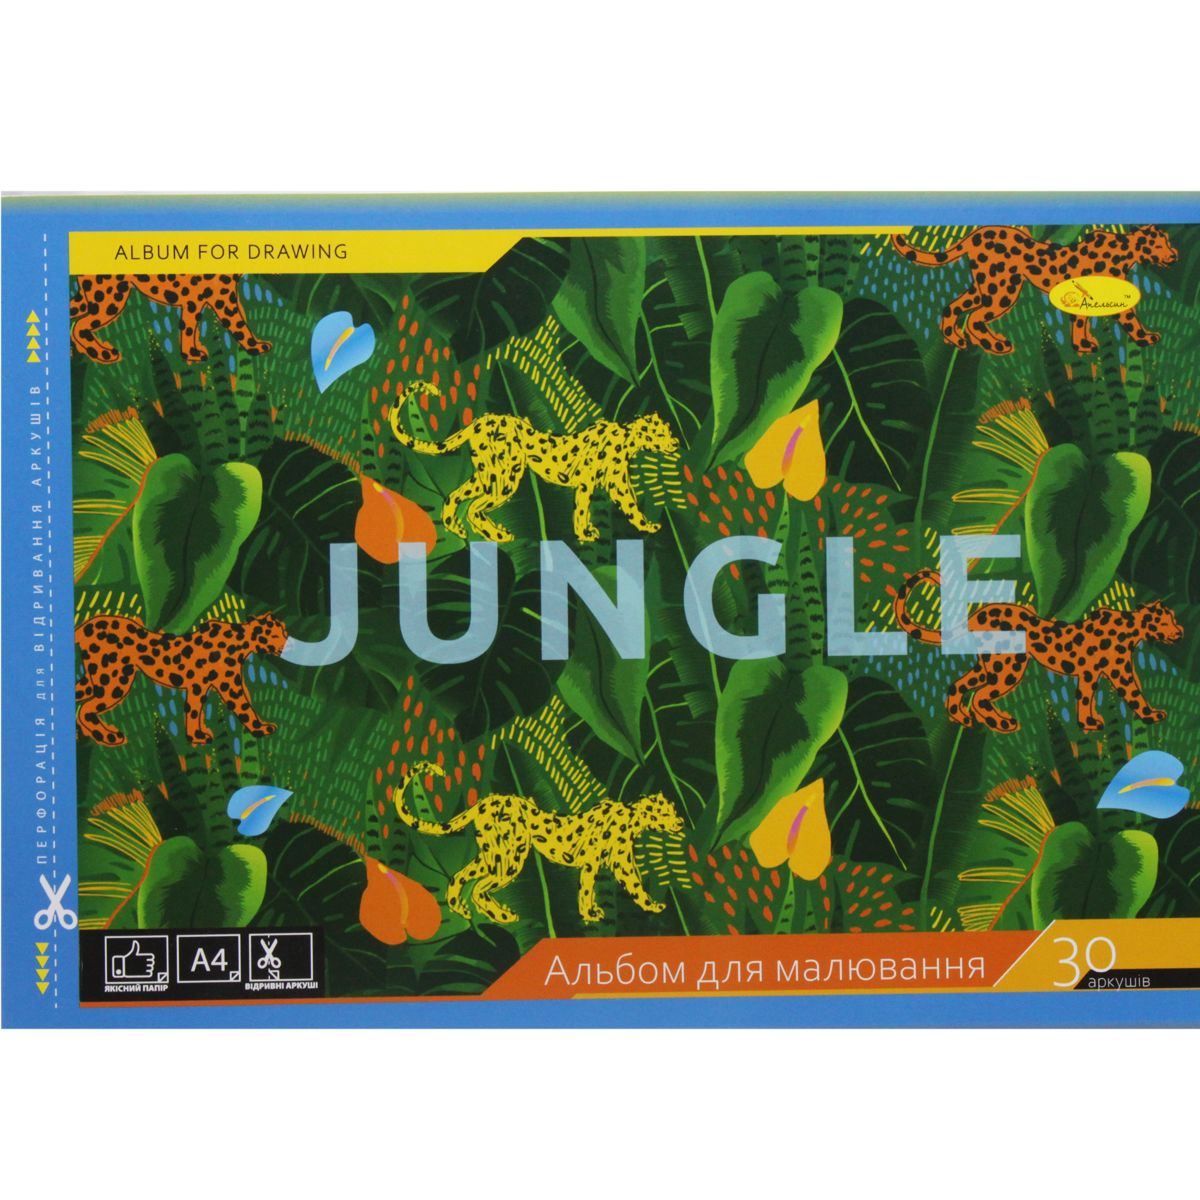 Альбом для малювання "Jungle" (30 аркушів)